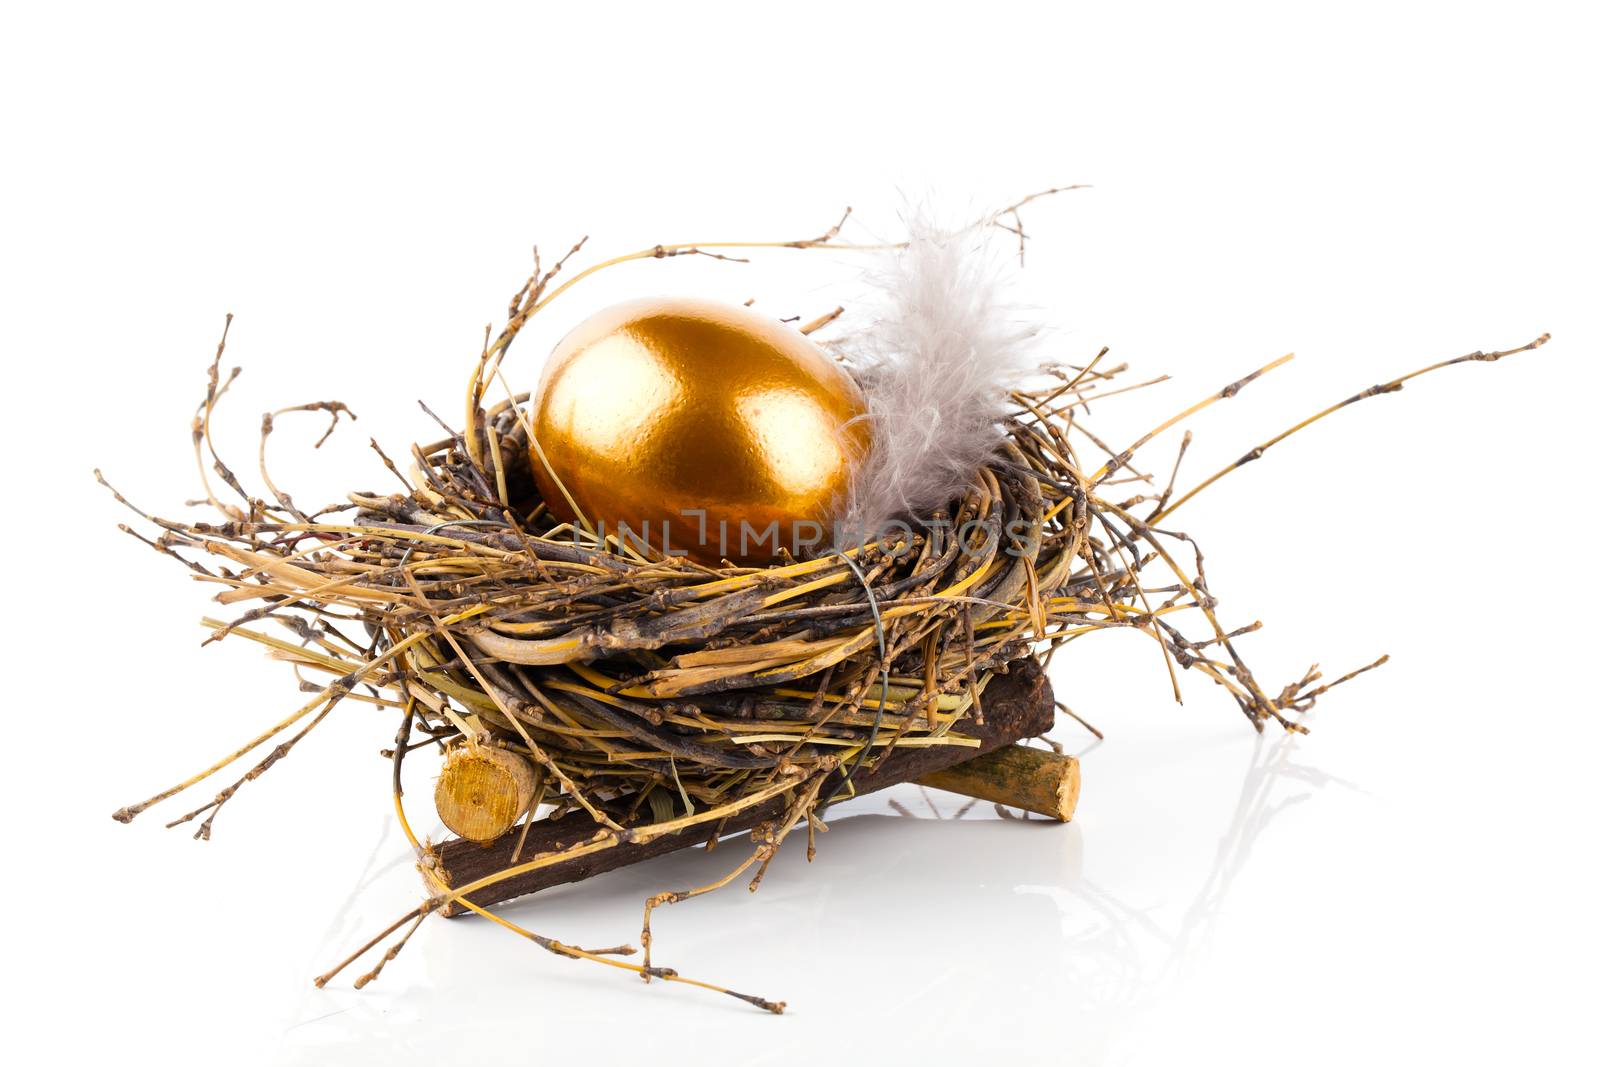 Golden egg in nest on white background by motorolka